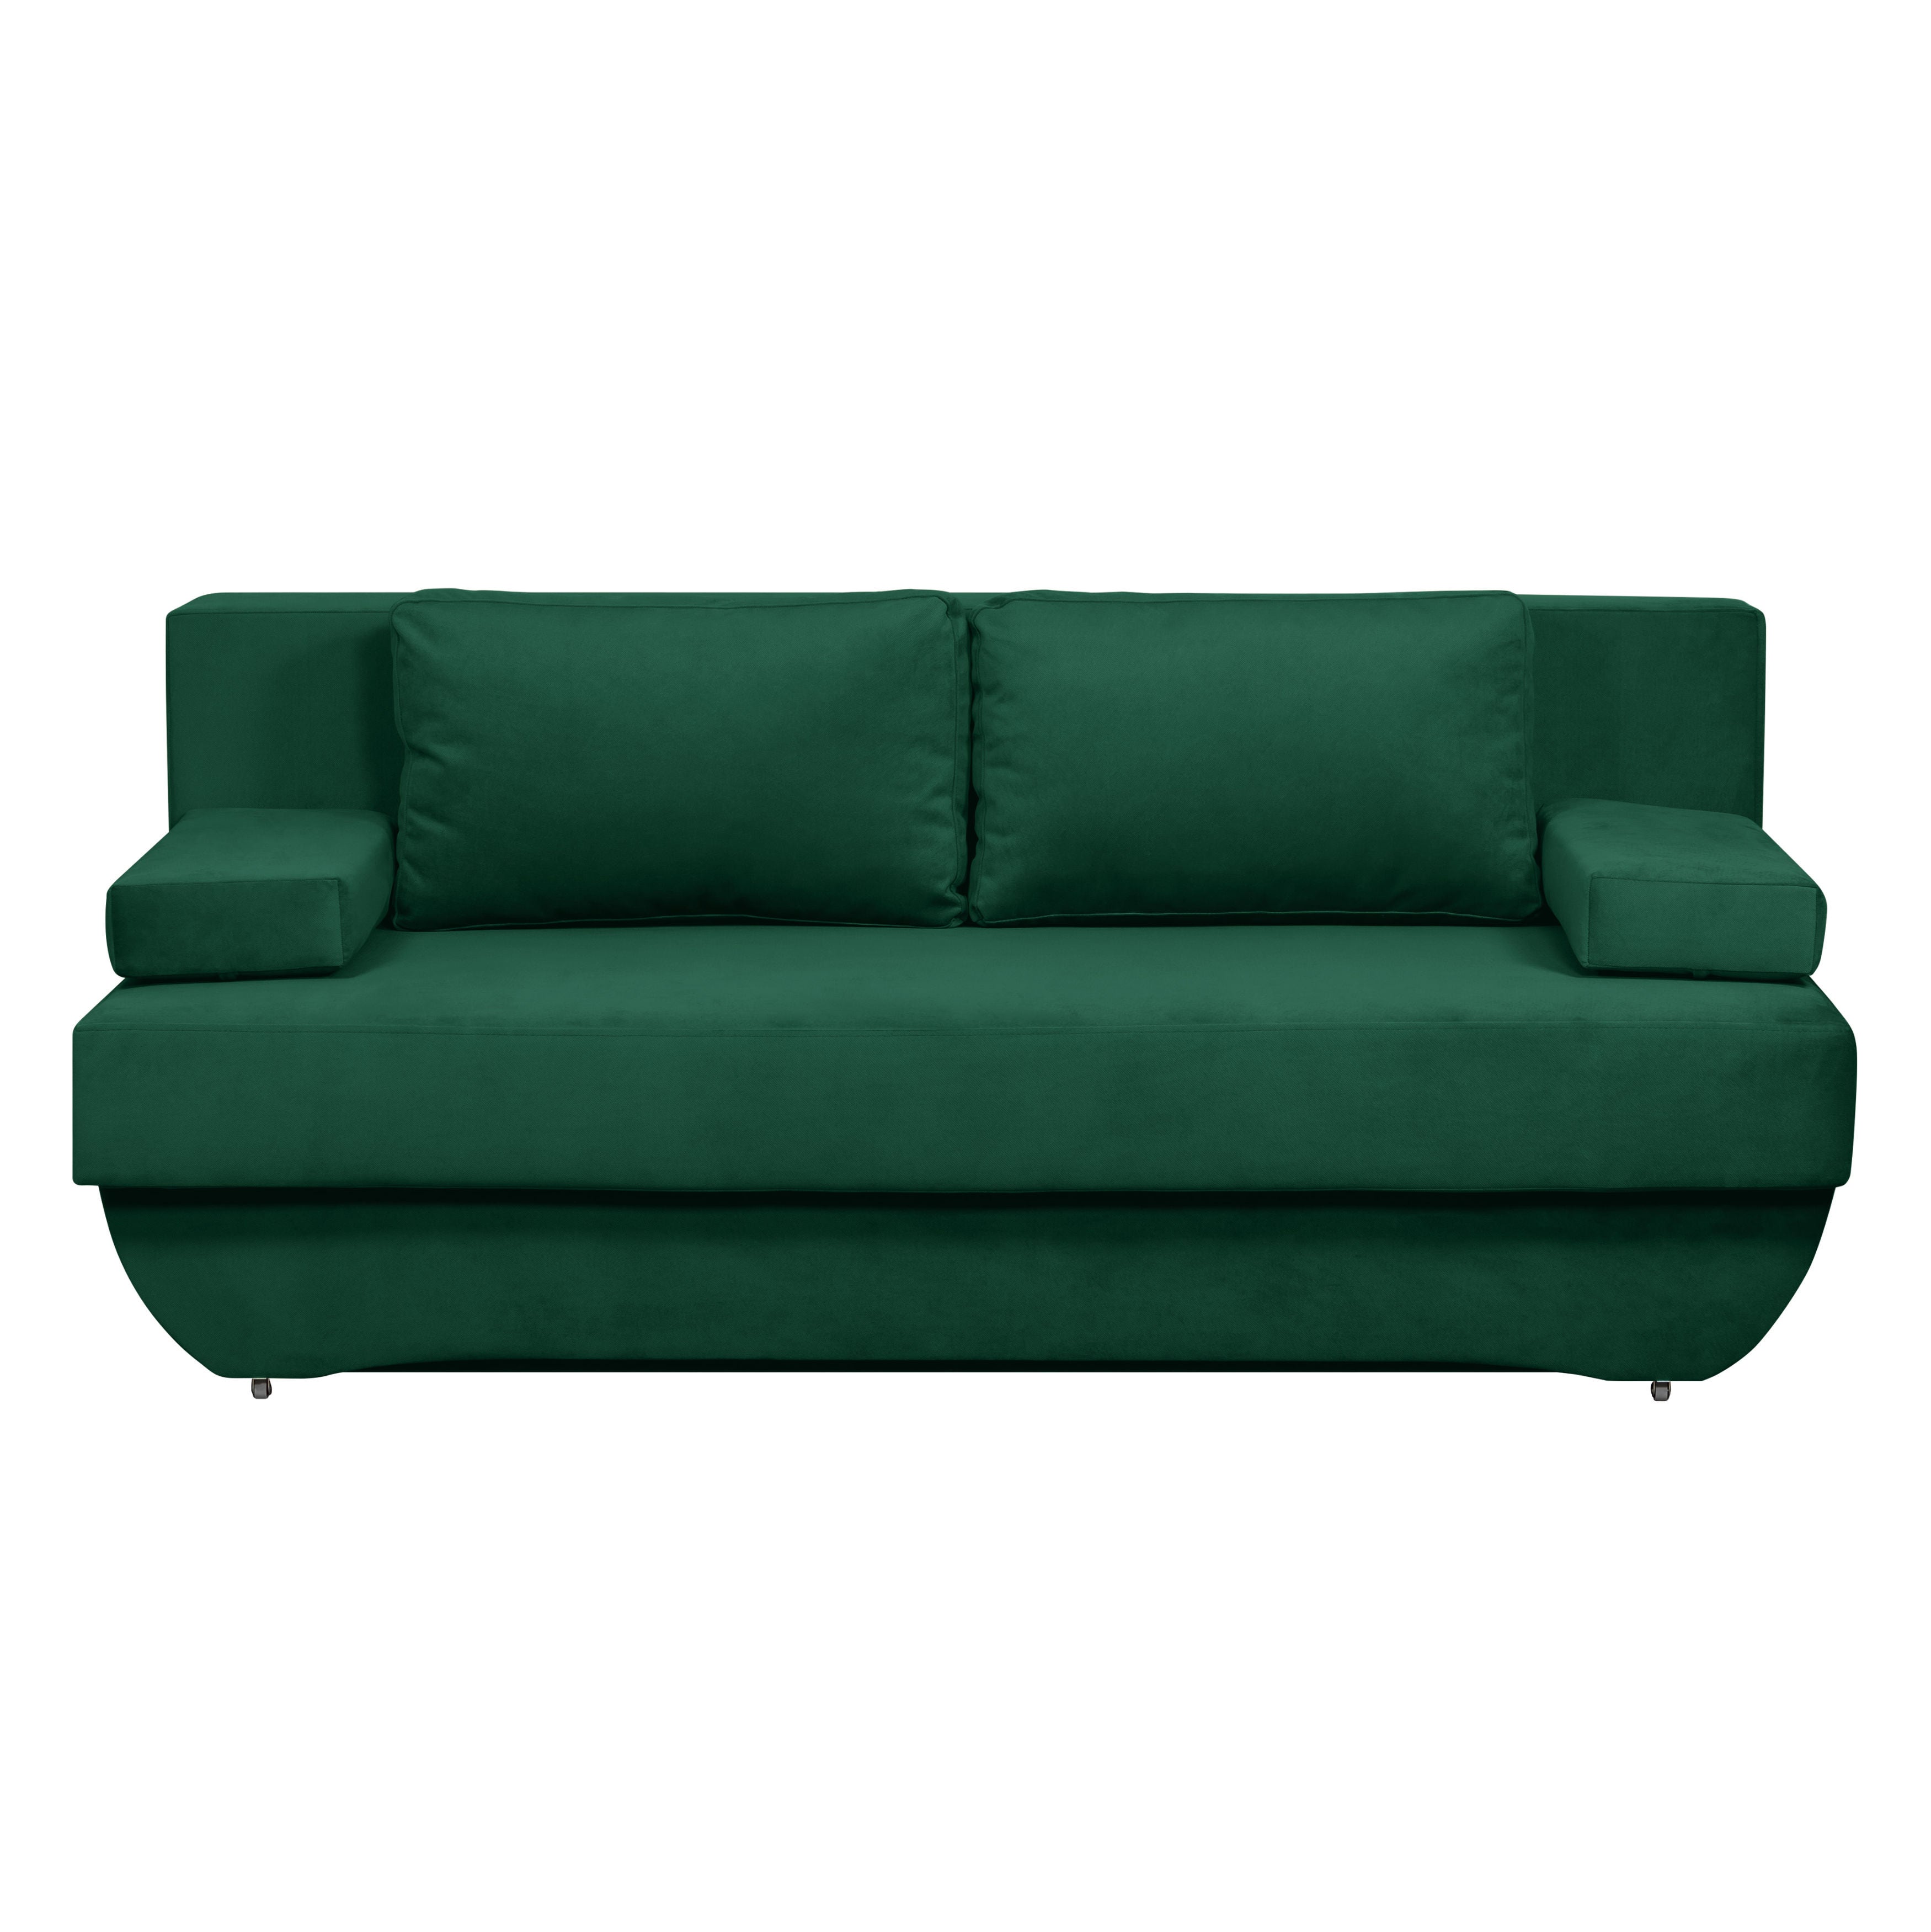 Canapea extensibila 3 locuri Eko Plus, cu lada, verde inchis, 190 x 98 x 82 cm, 2C